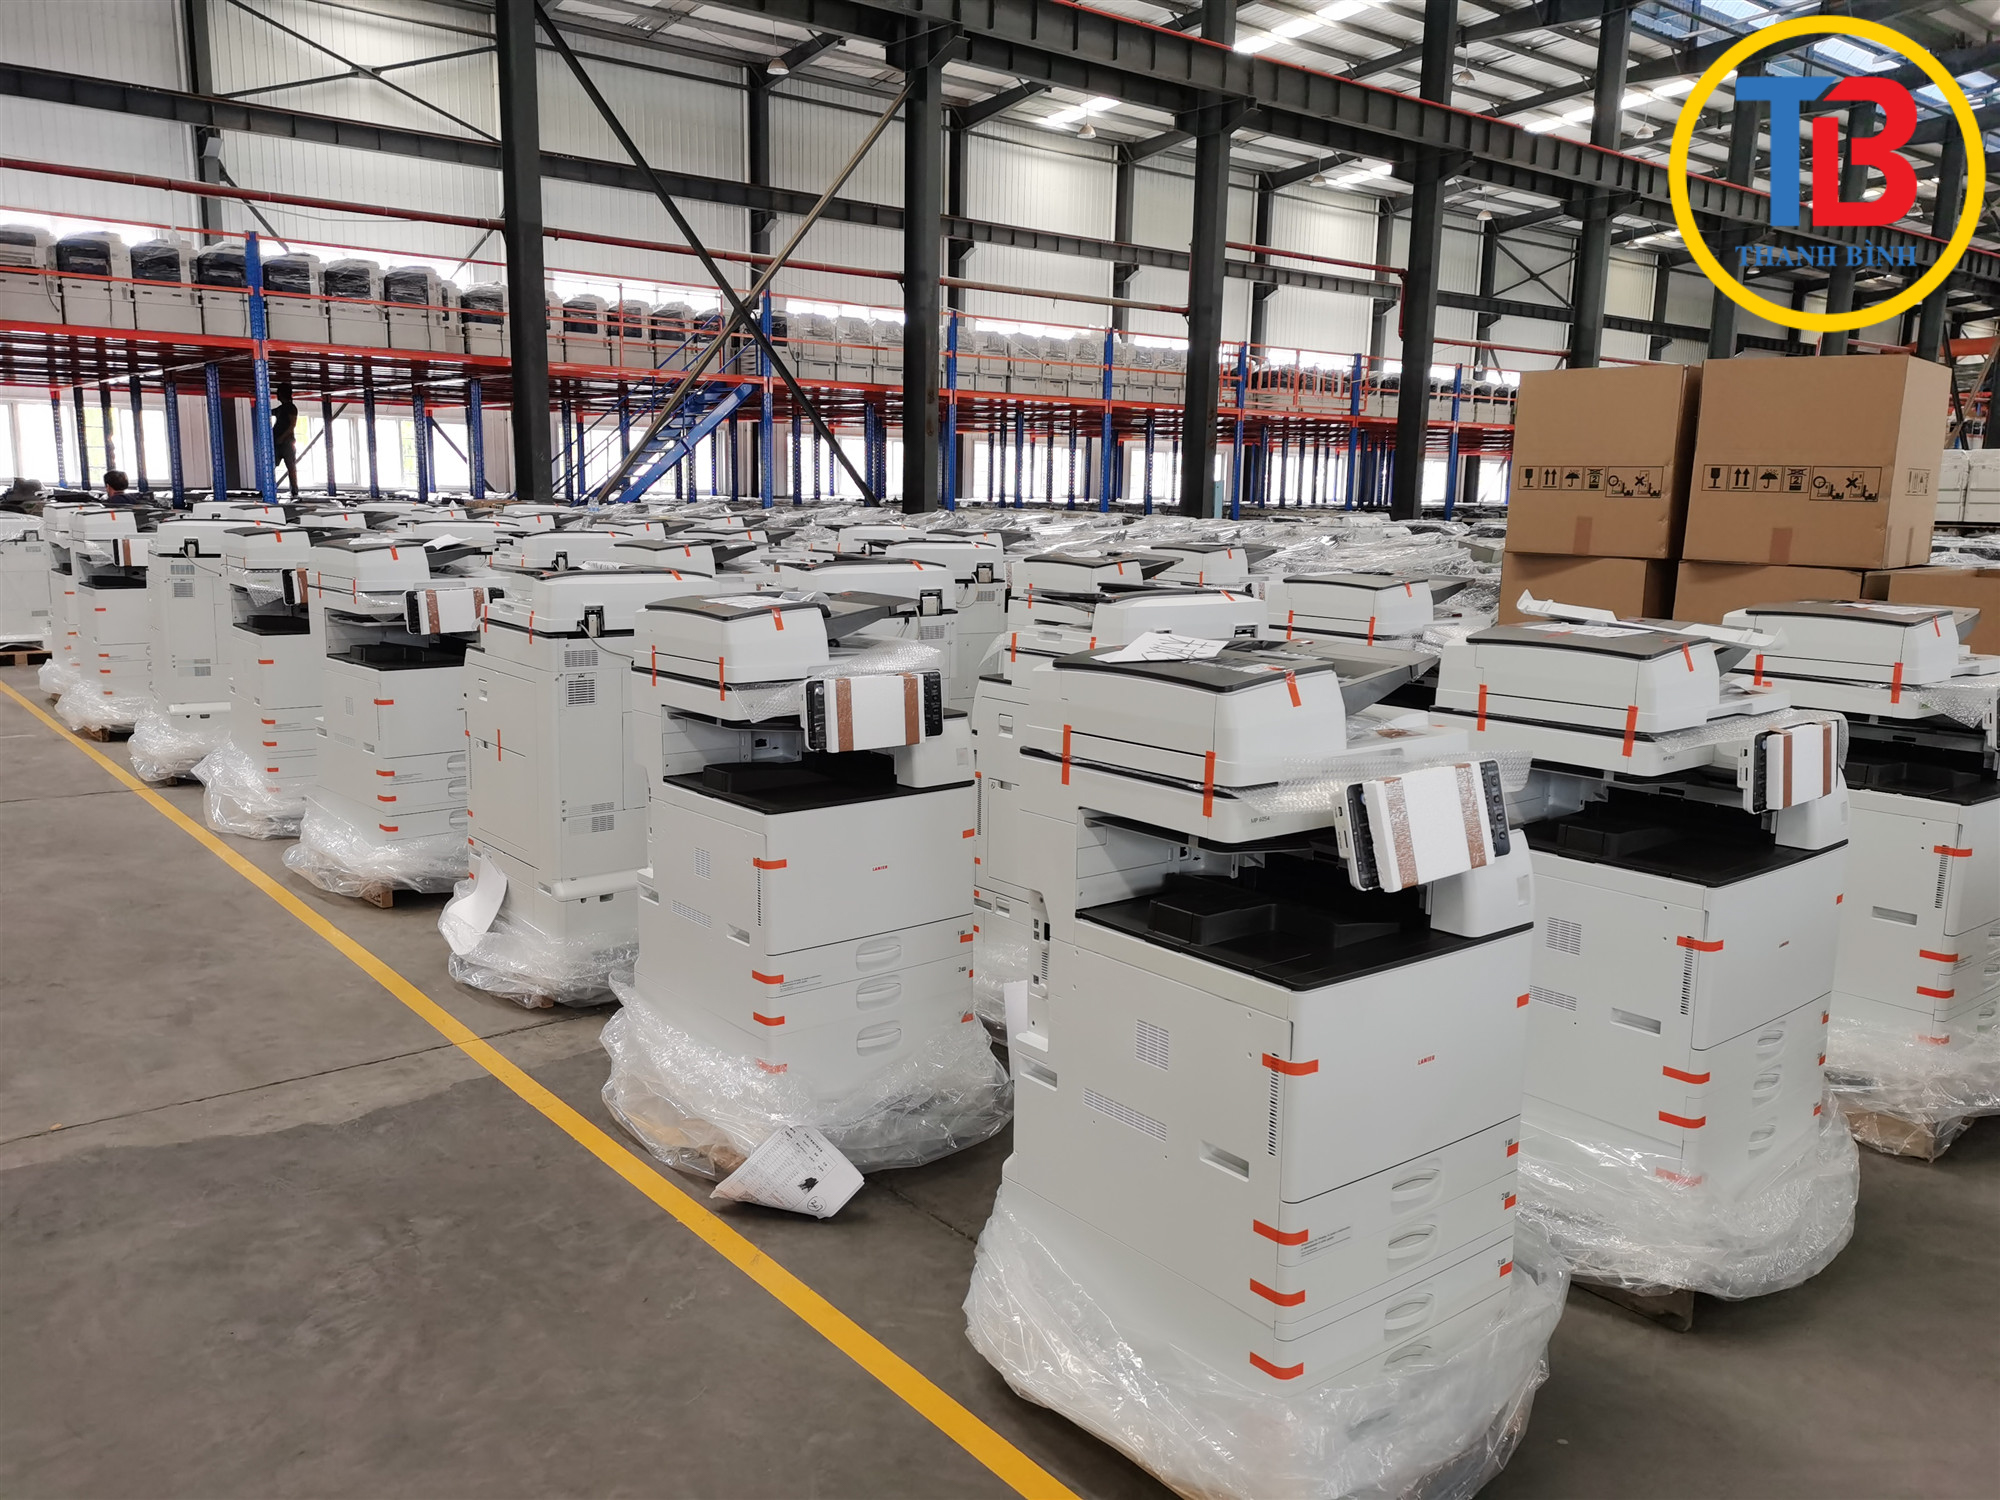 Bán và cho thuê máy photocopy tại Sơn La, Hòa Bình giá rẻ từ 500k